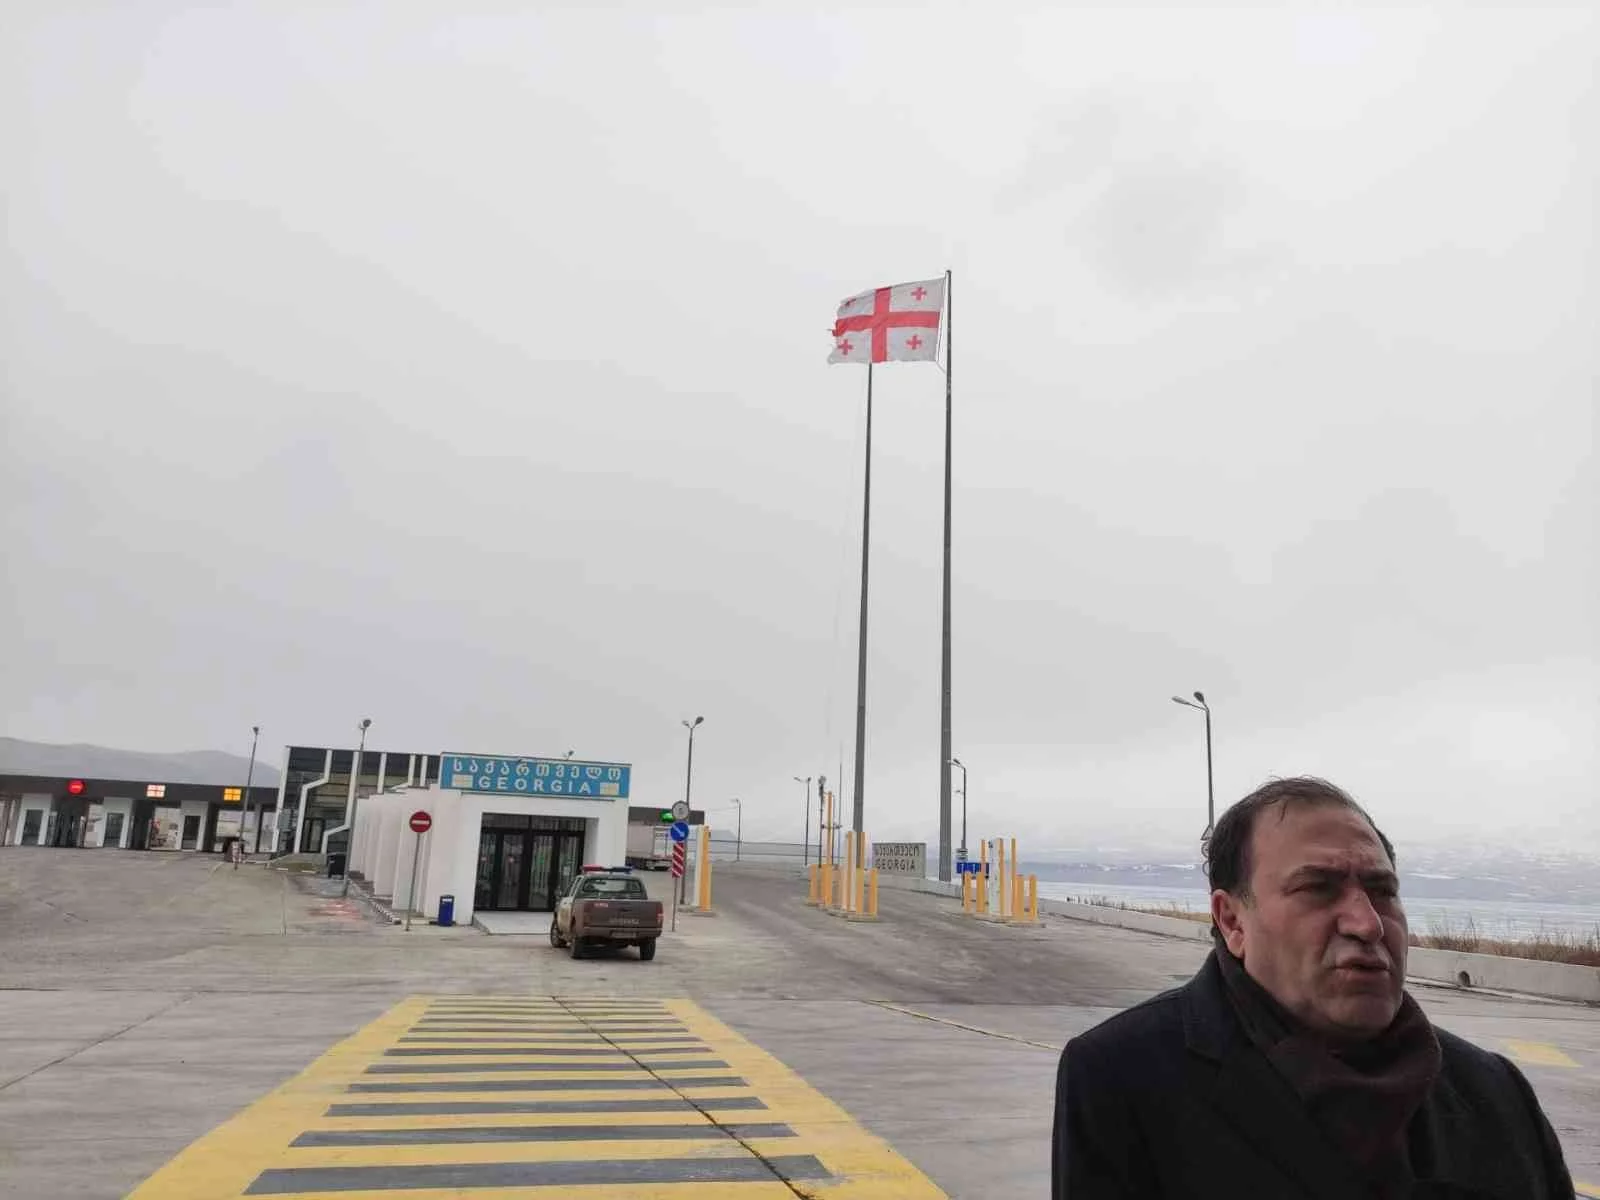 Gürcistan, sınır kapılarının yolcu trafiğine açılmasına izin verdi